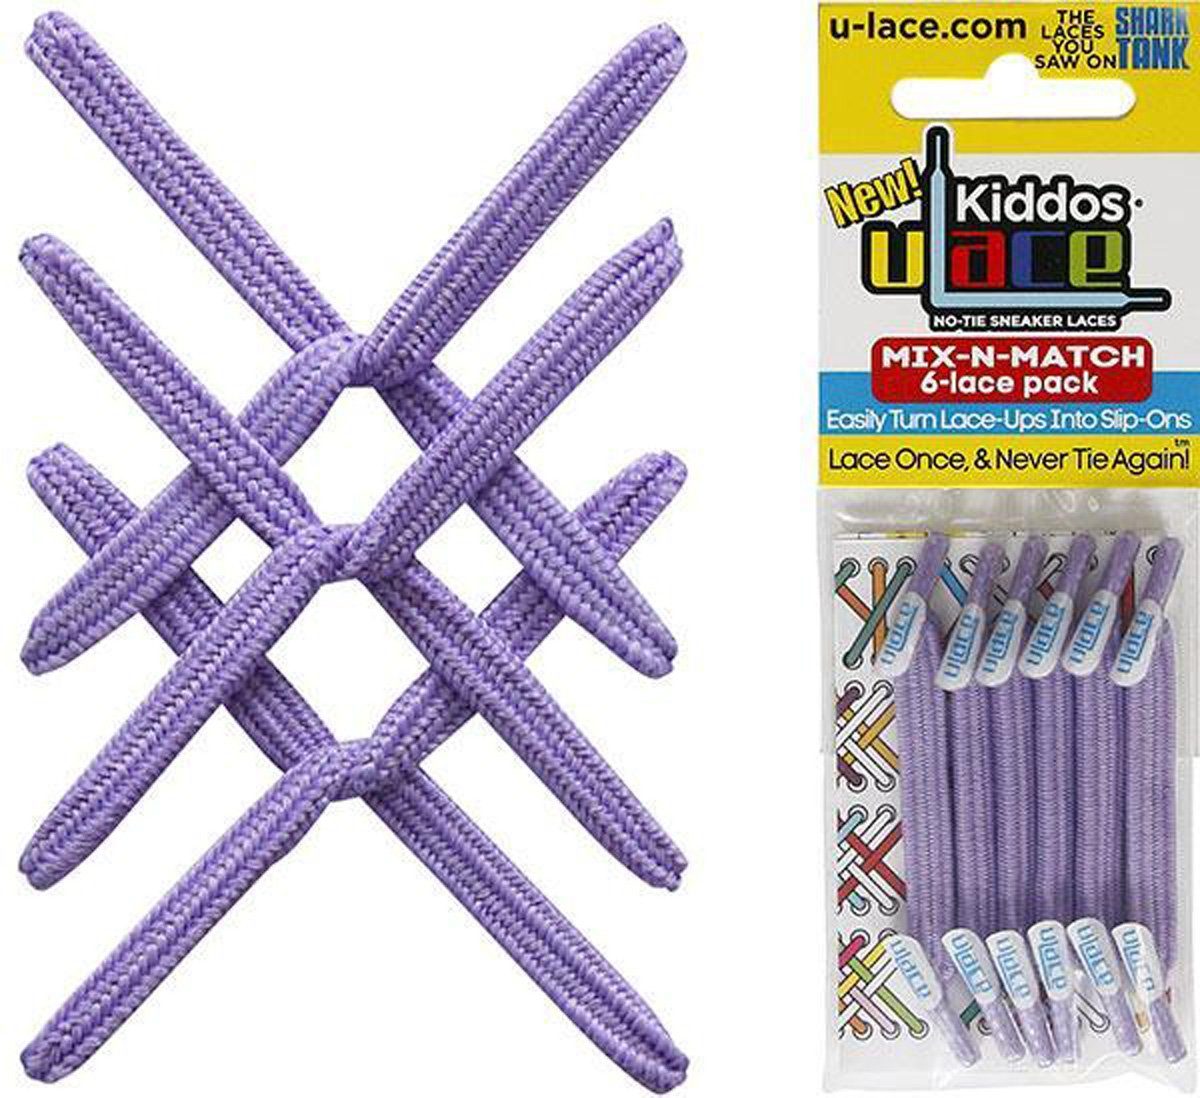 U-Laces Schnürsenkel Kiddos - elastische Schnürsenkel mit Wiederhaken für Kinder Lavender